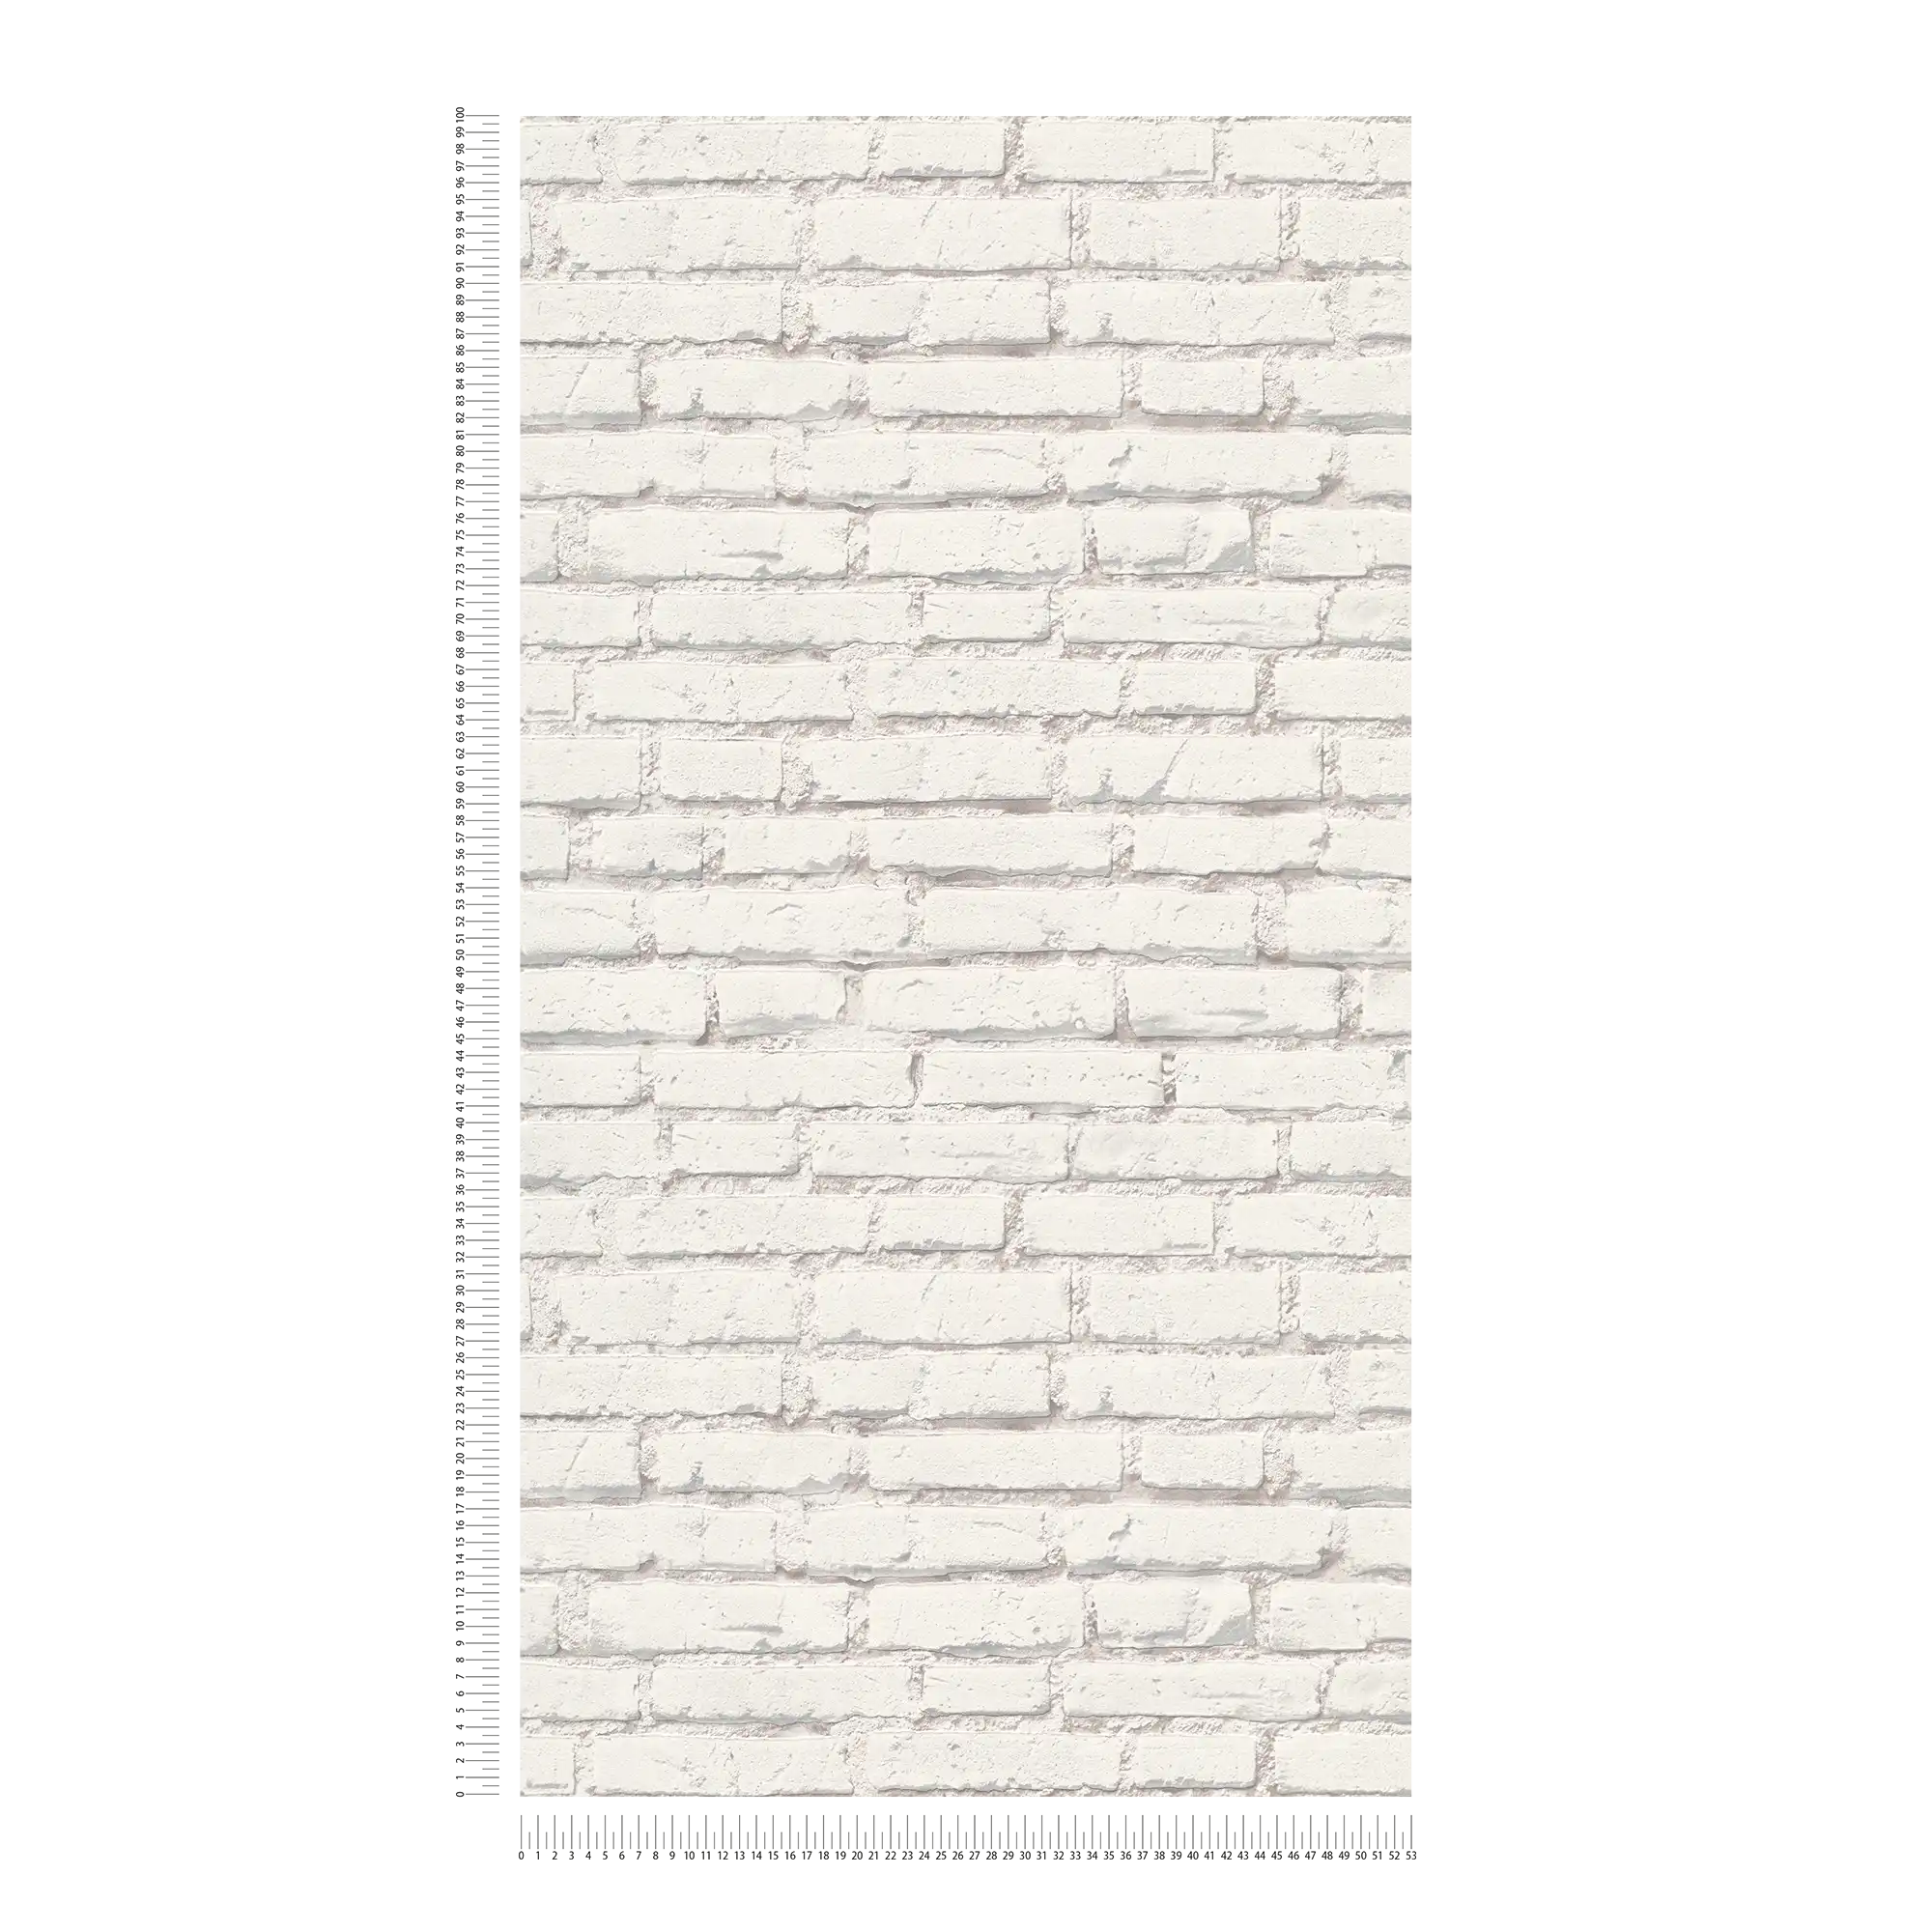             Tapete mit Backsteinmauer mit weißen Steinen und Fugen – Weiß, Grau
        